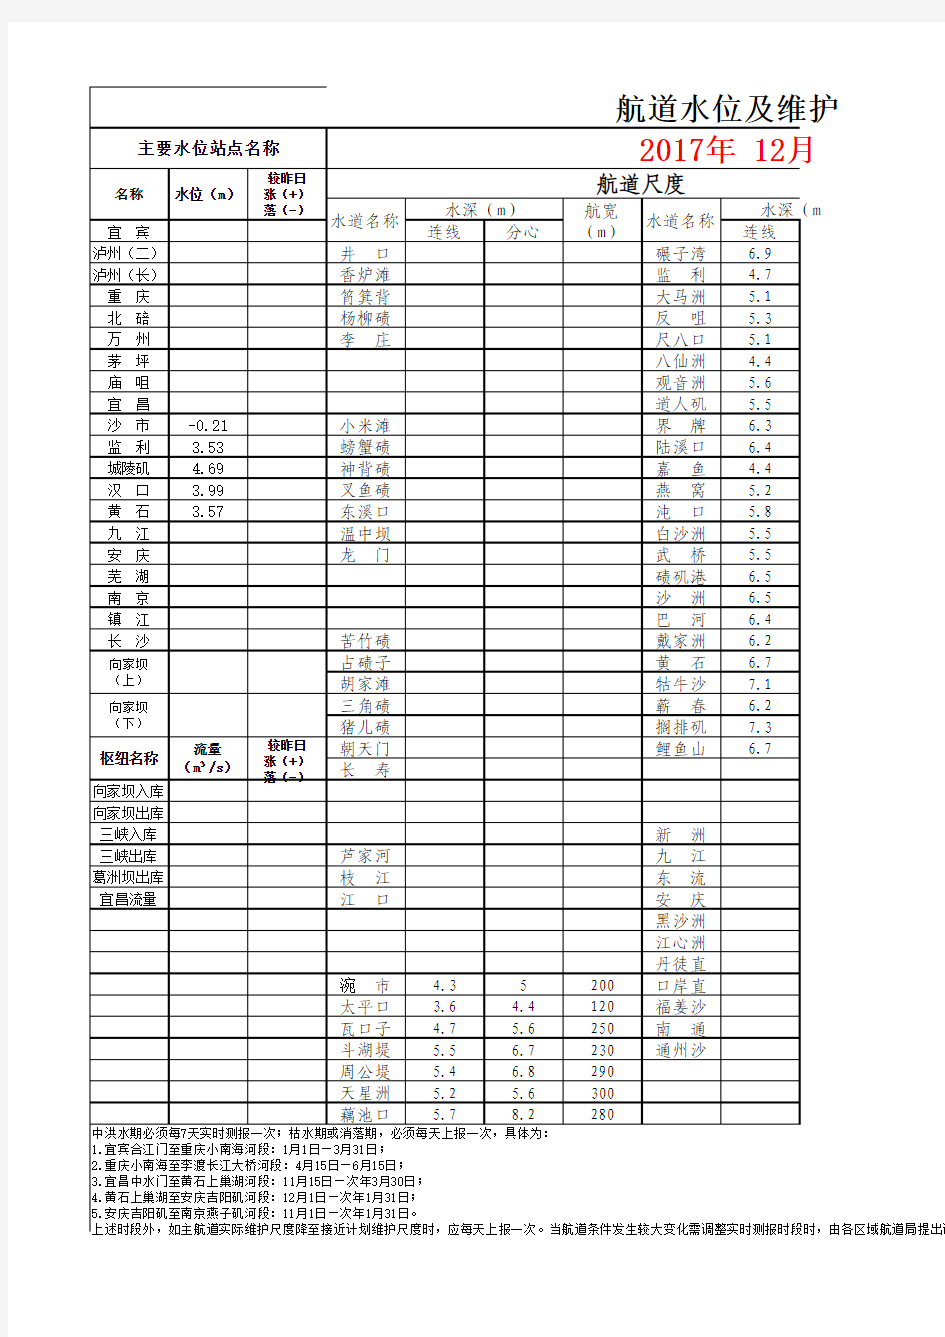 长江武汉航道局2017年12月3日航道维护尺度表.